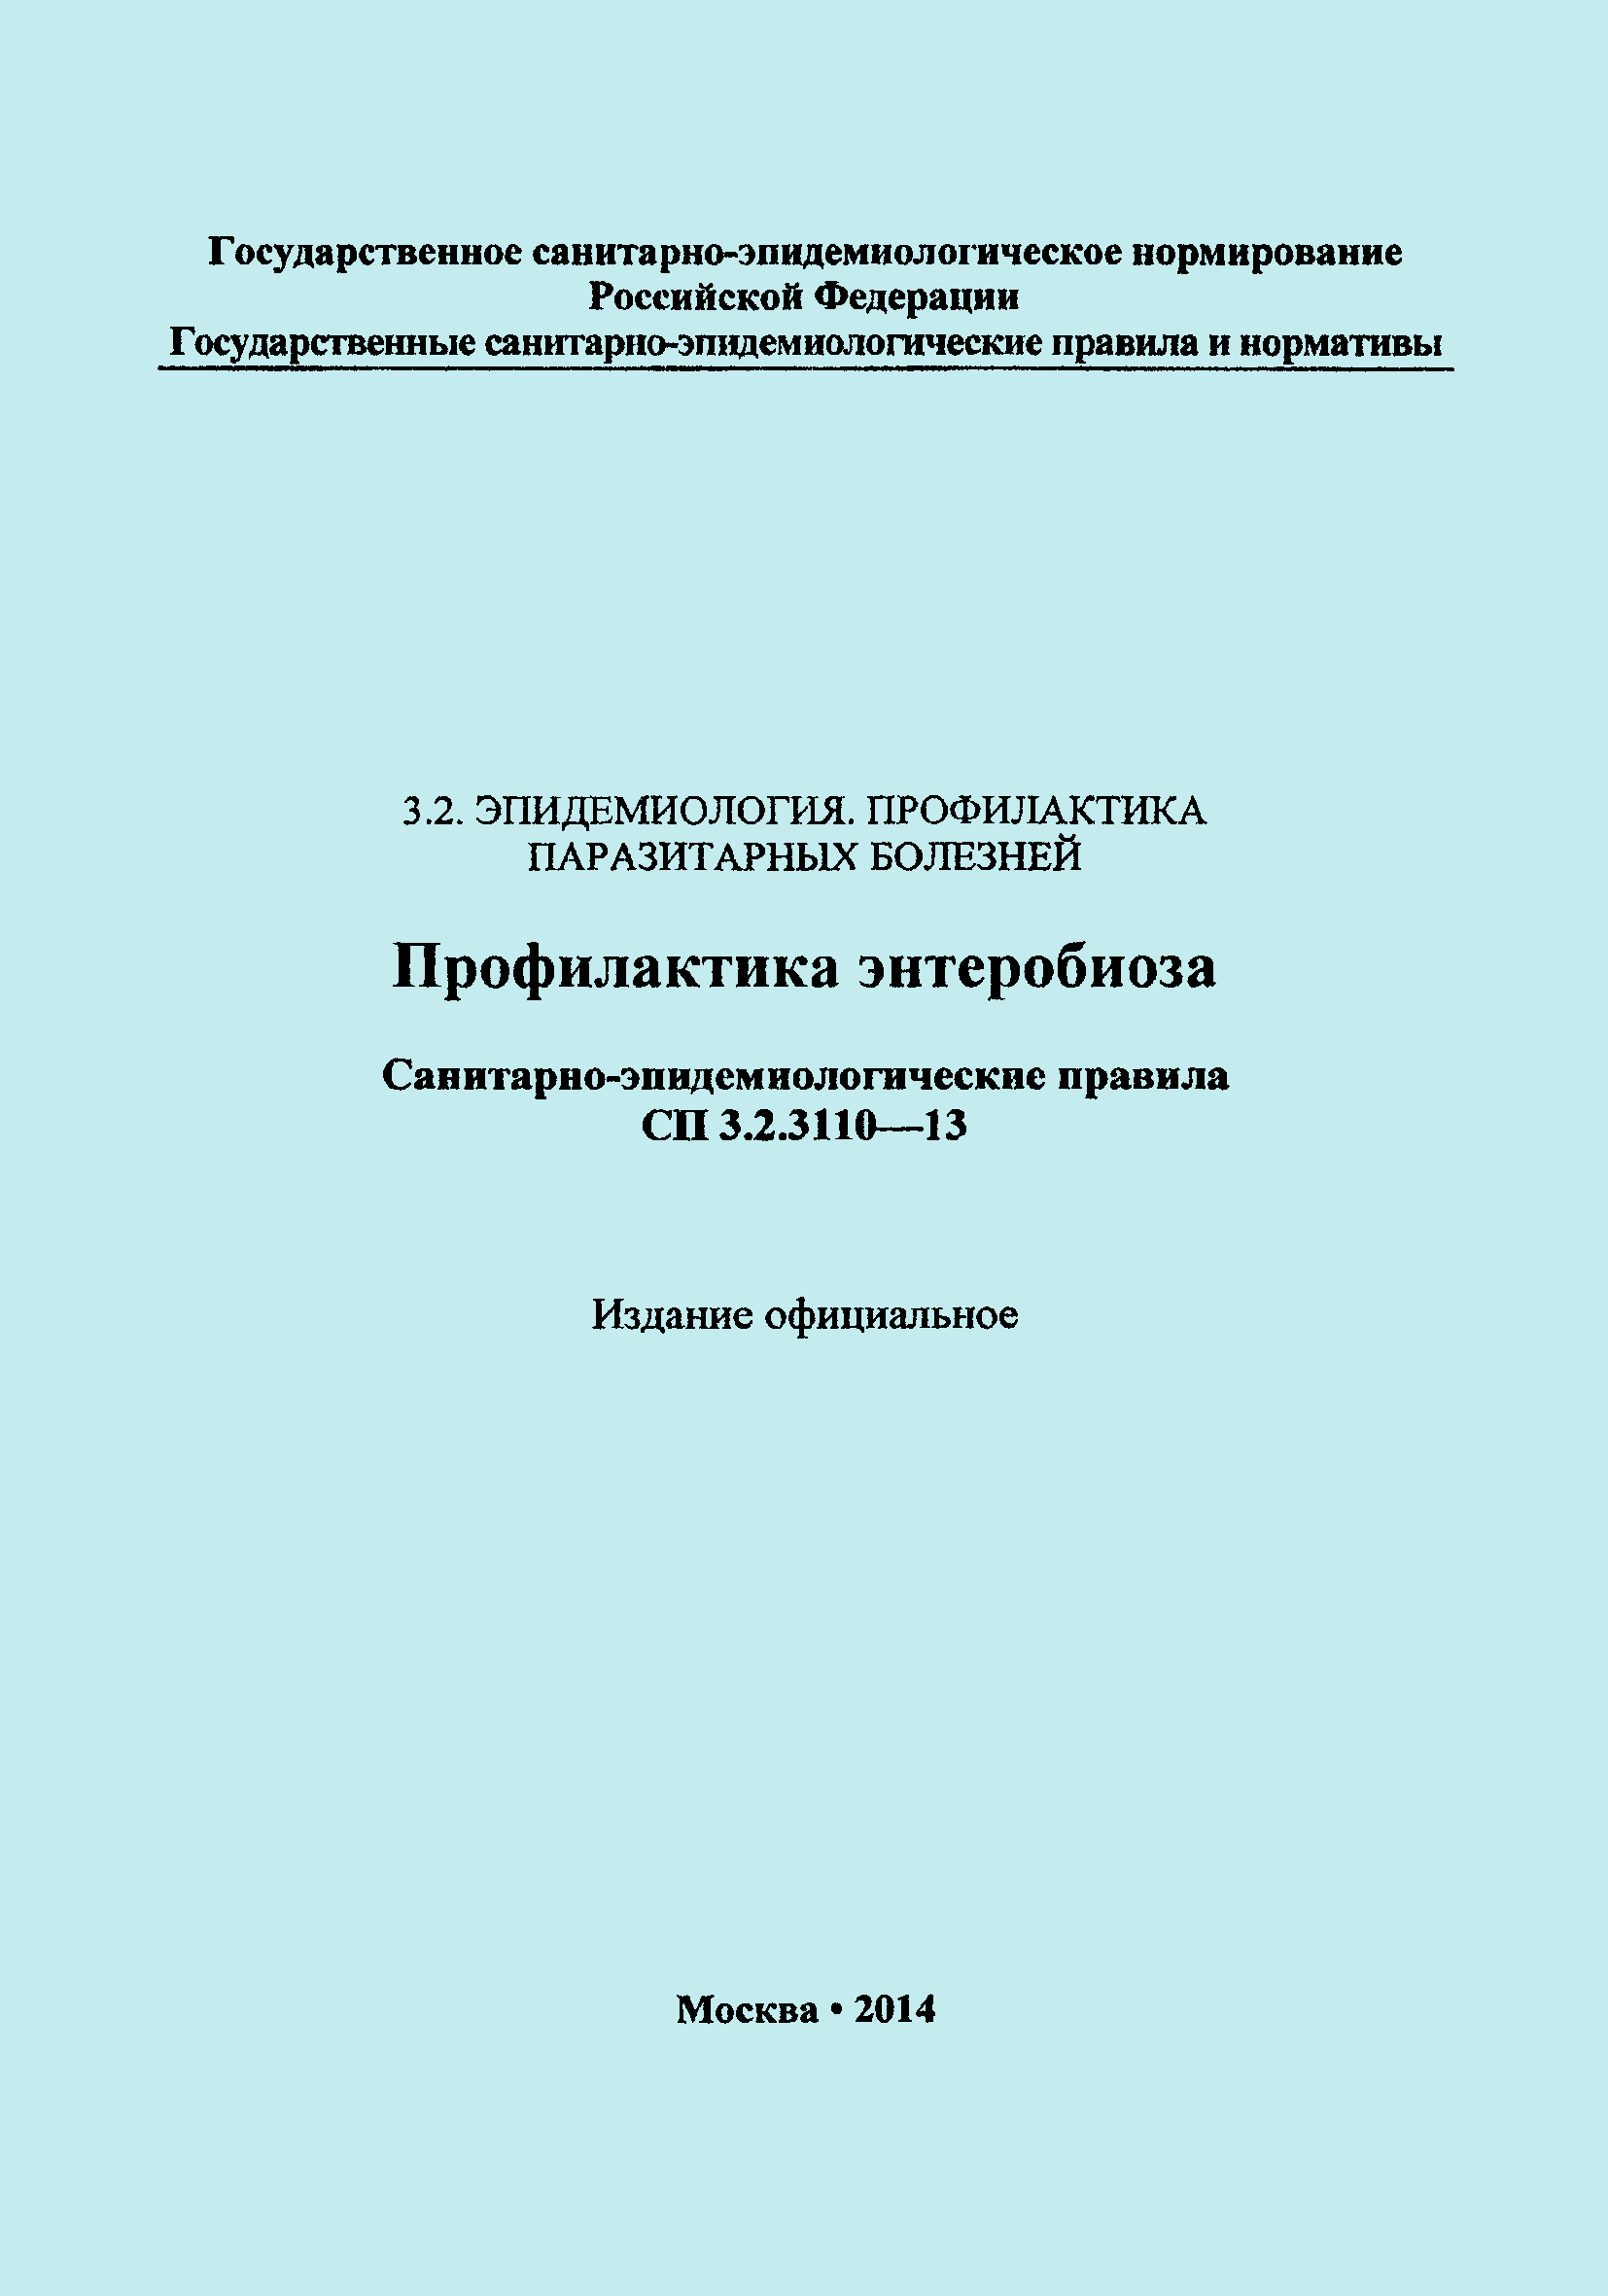 СП 3.2.3110-13